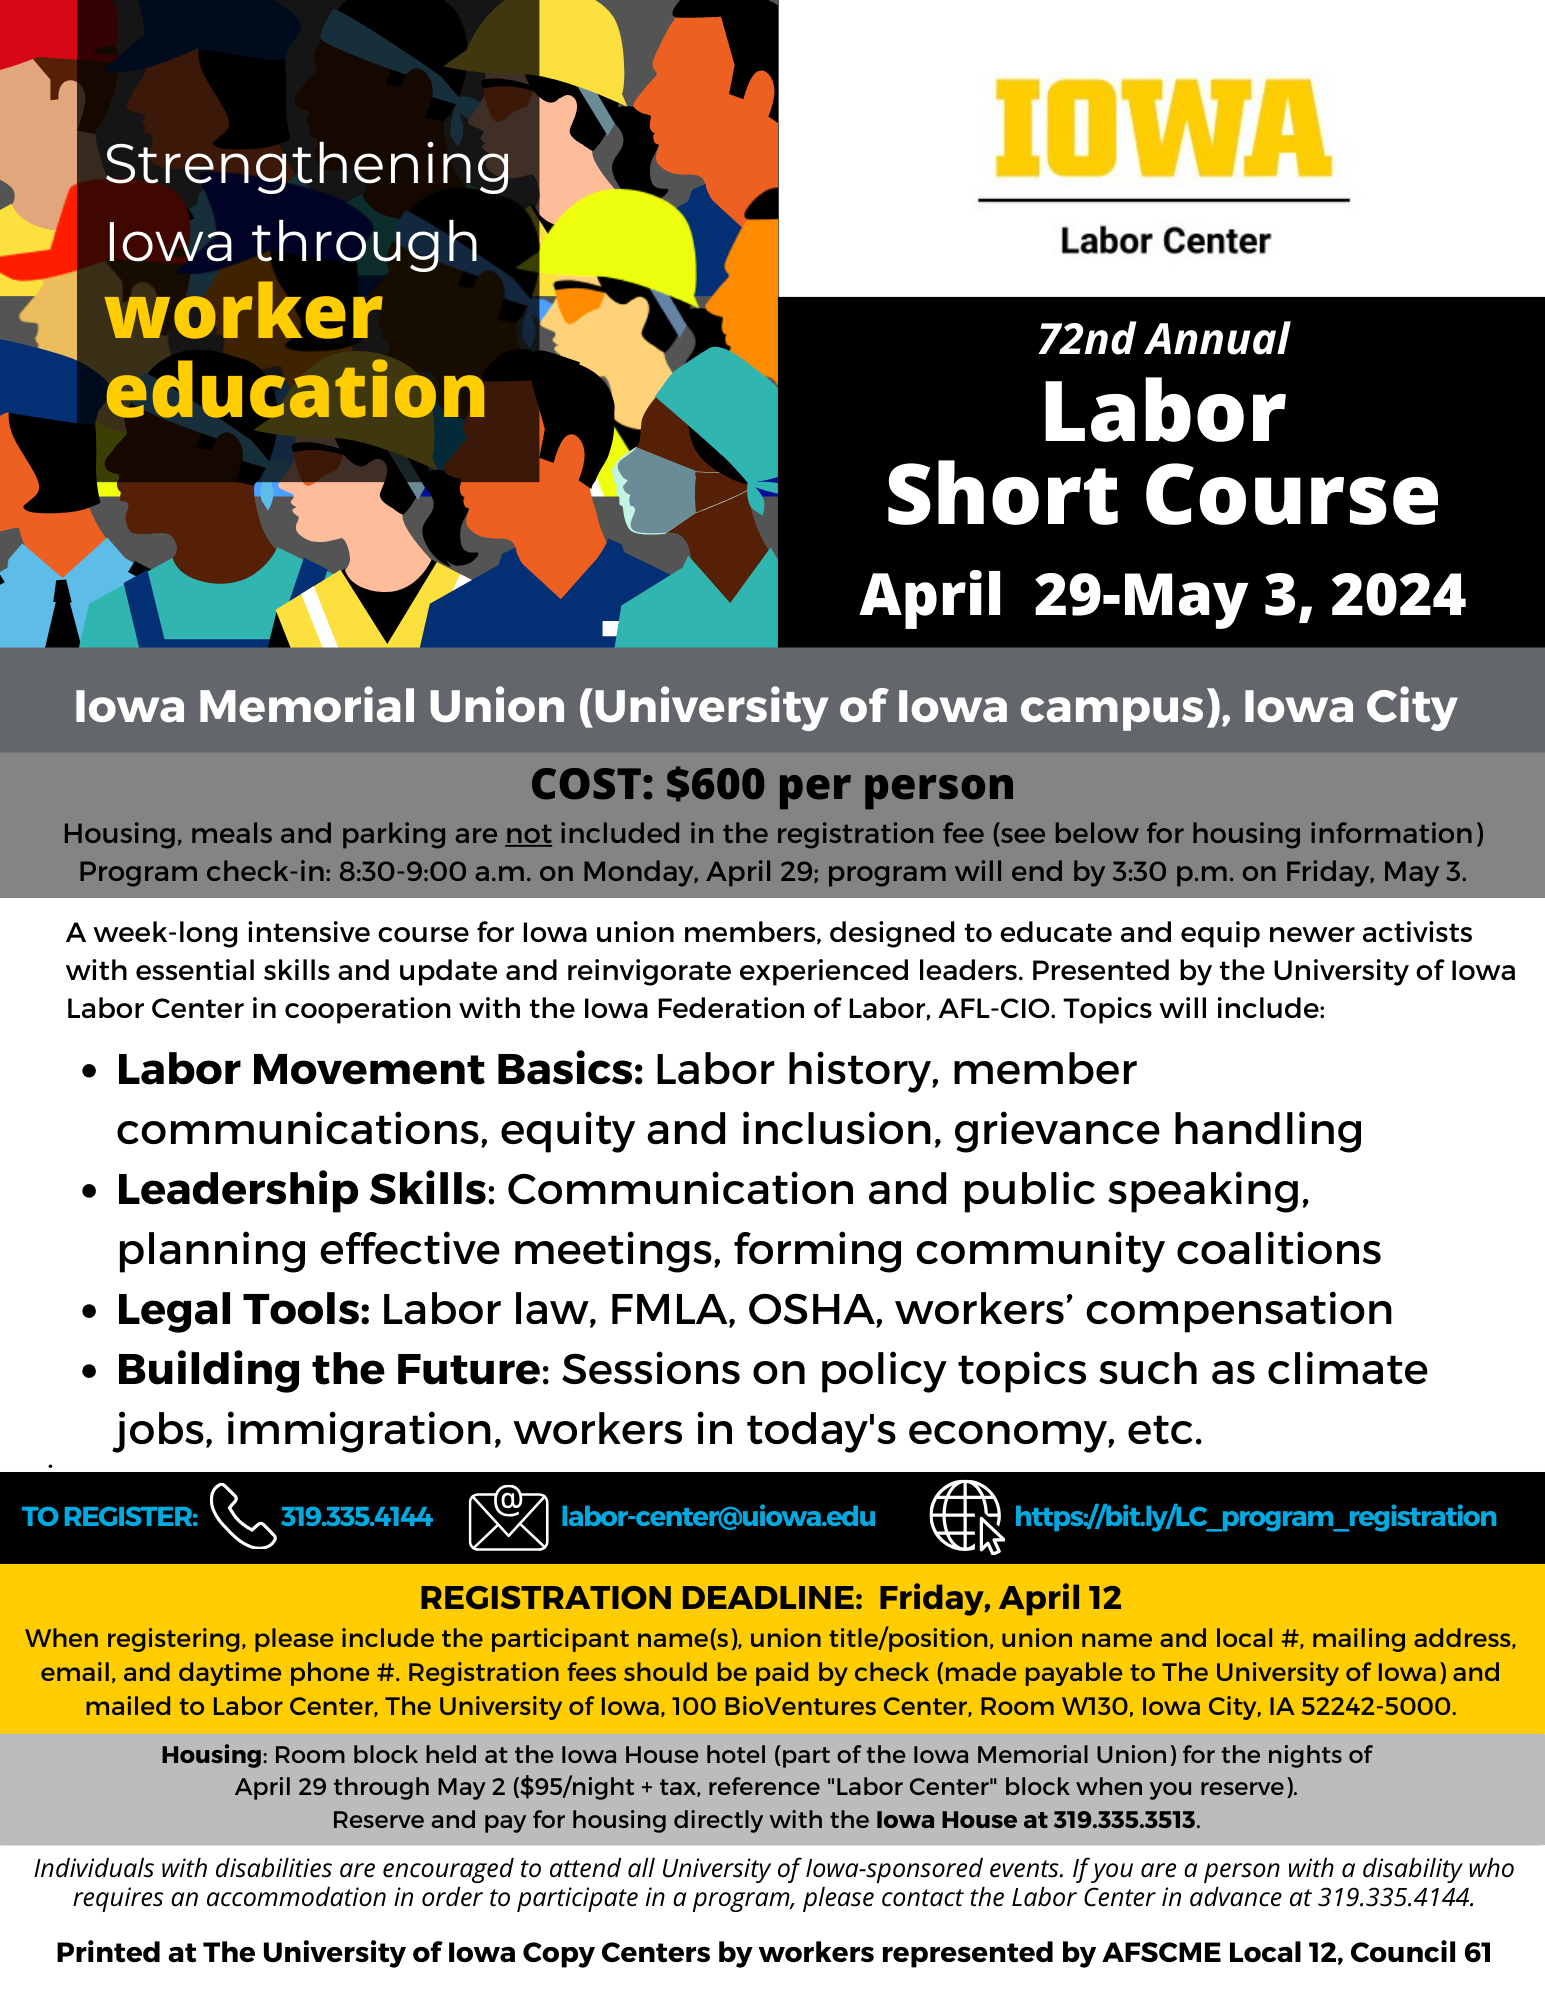 Labor Short Course 2024 flyer